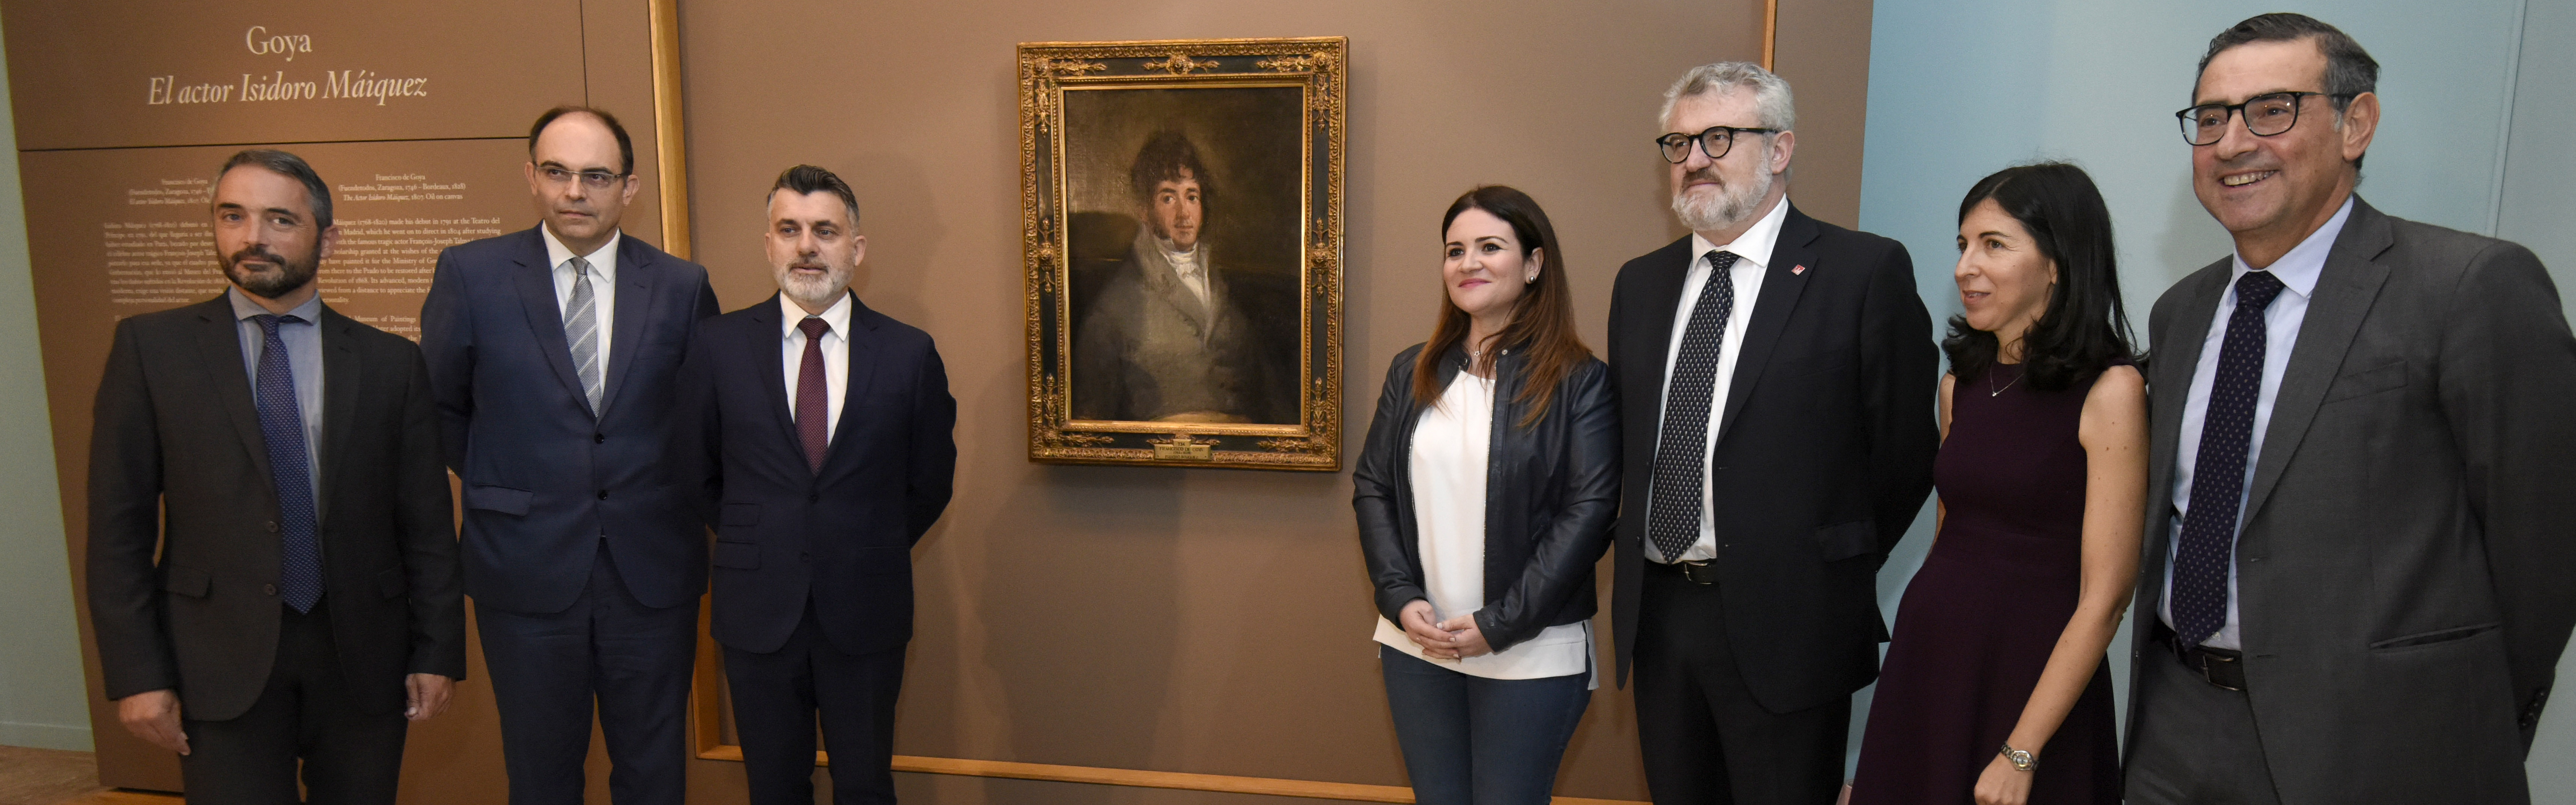 La UMU participa en la programación del Mubam en torno al retrato de Isidoro Máiquez de Goya